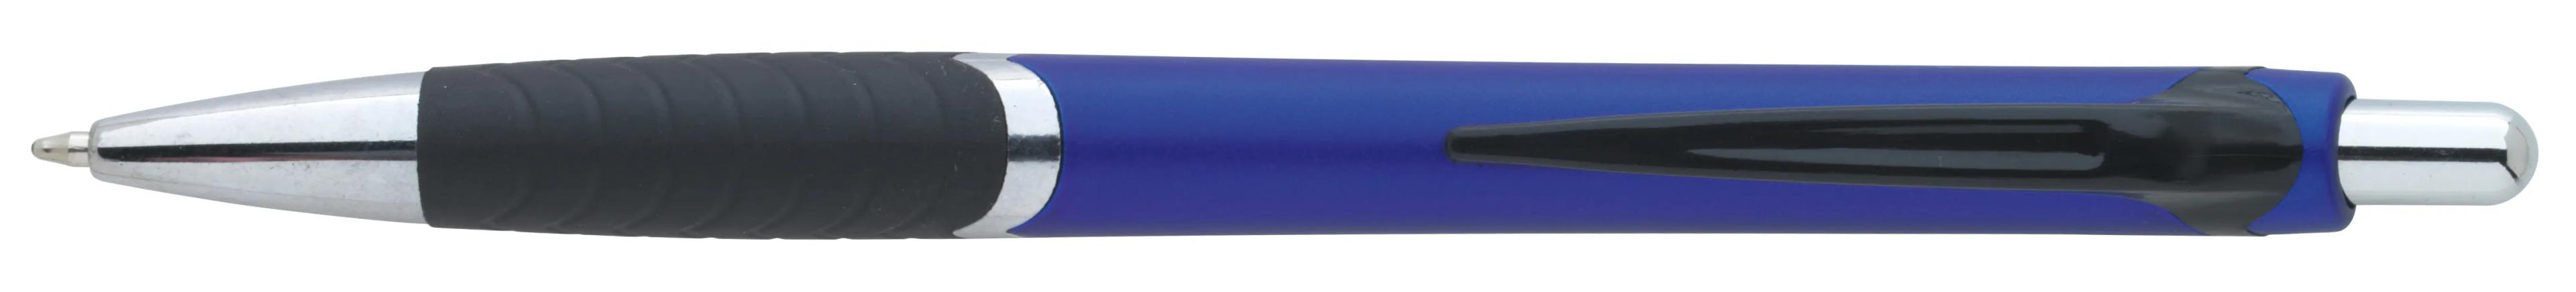 Arrow Metallic Pen 3 of 43